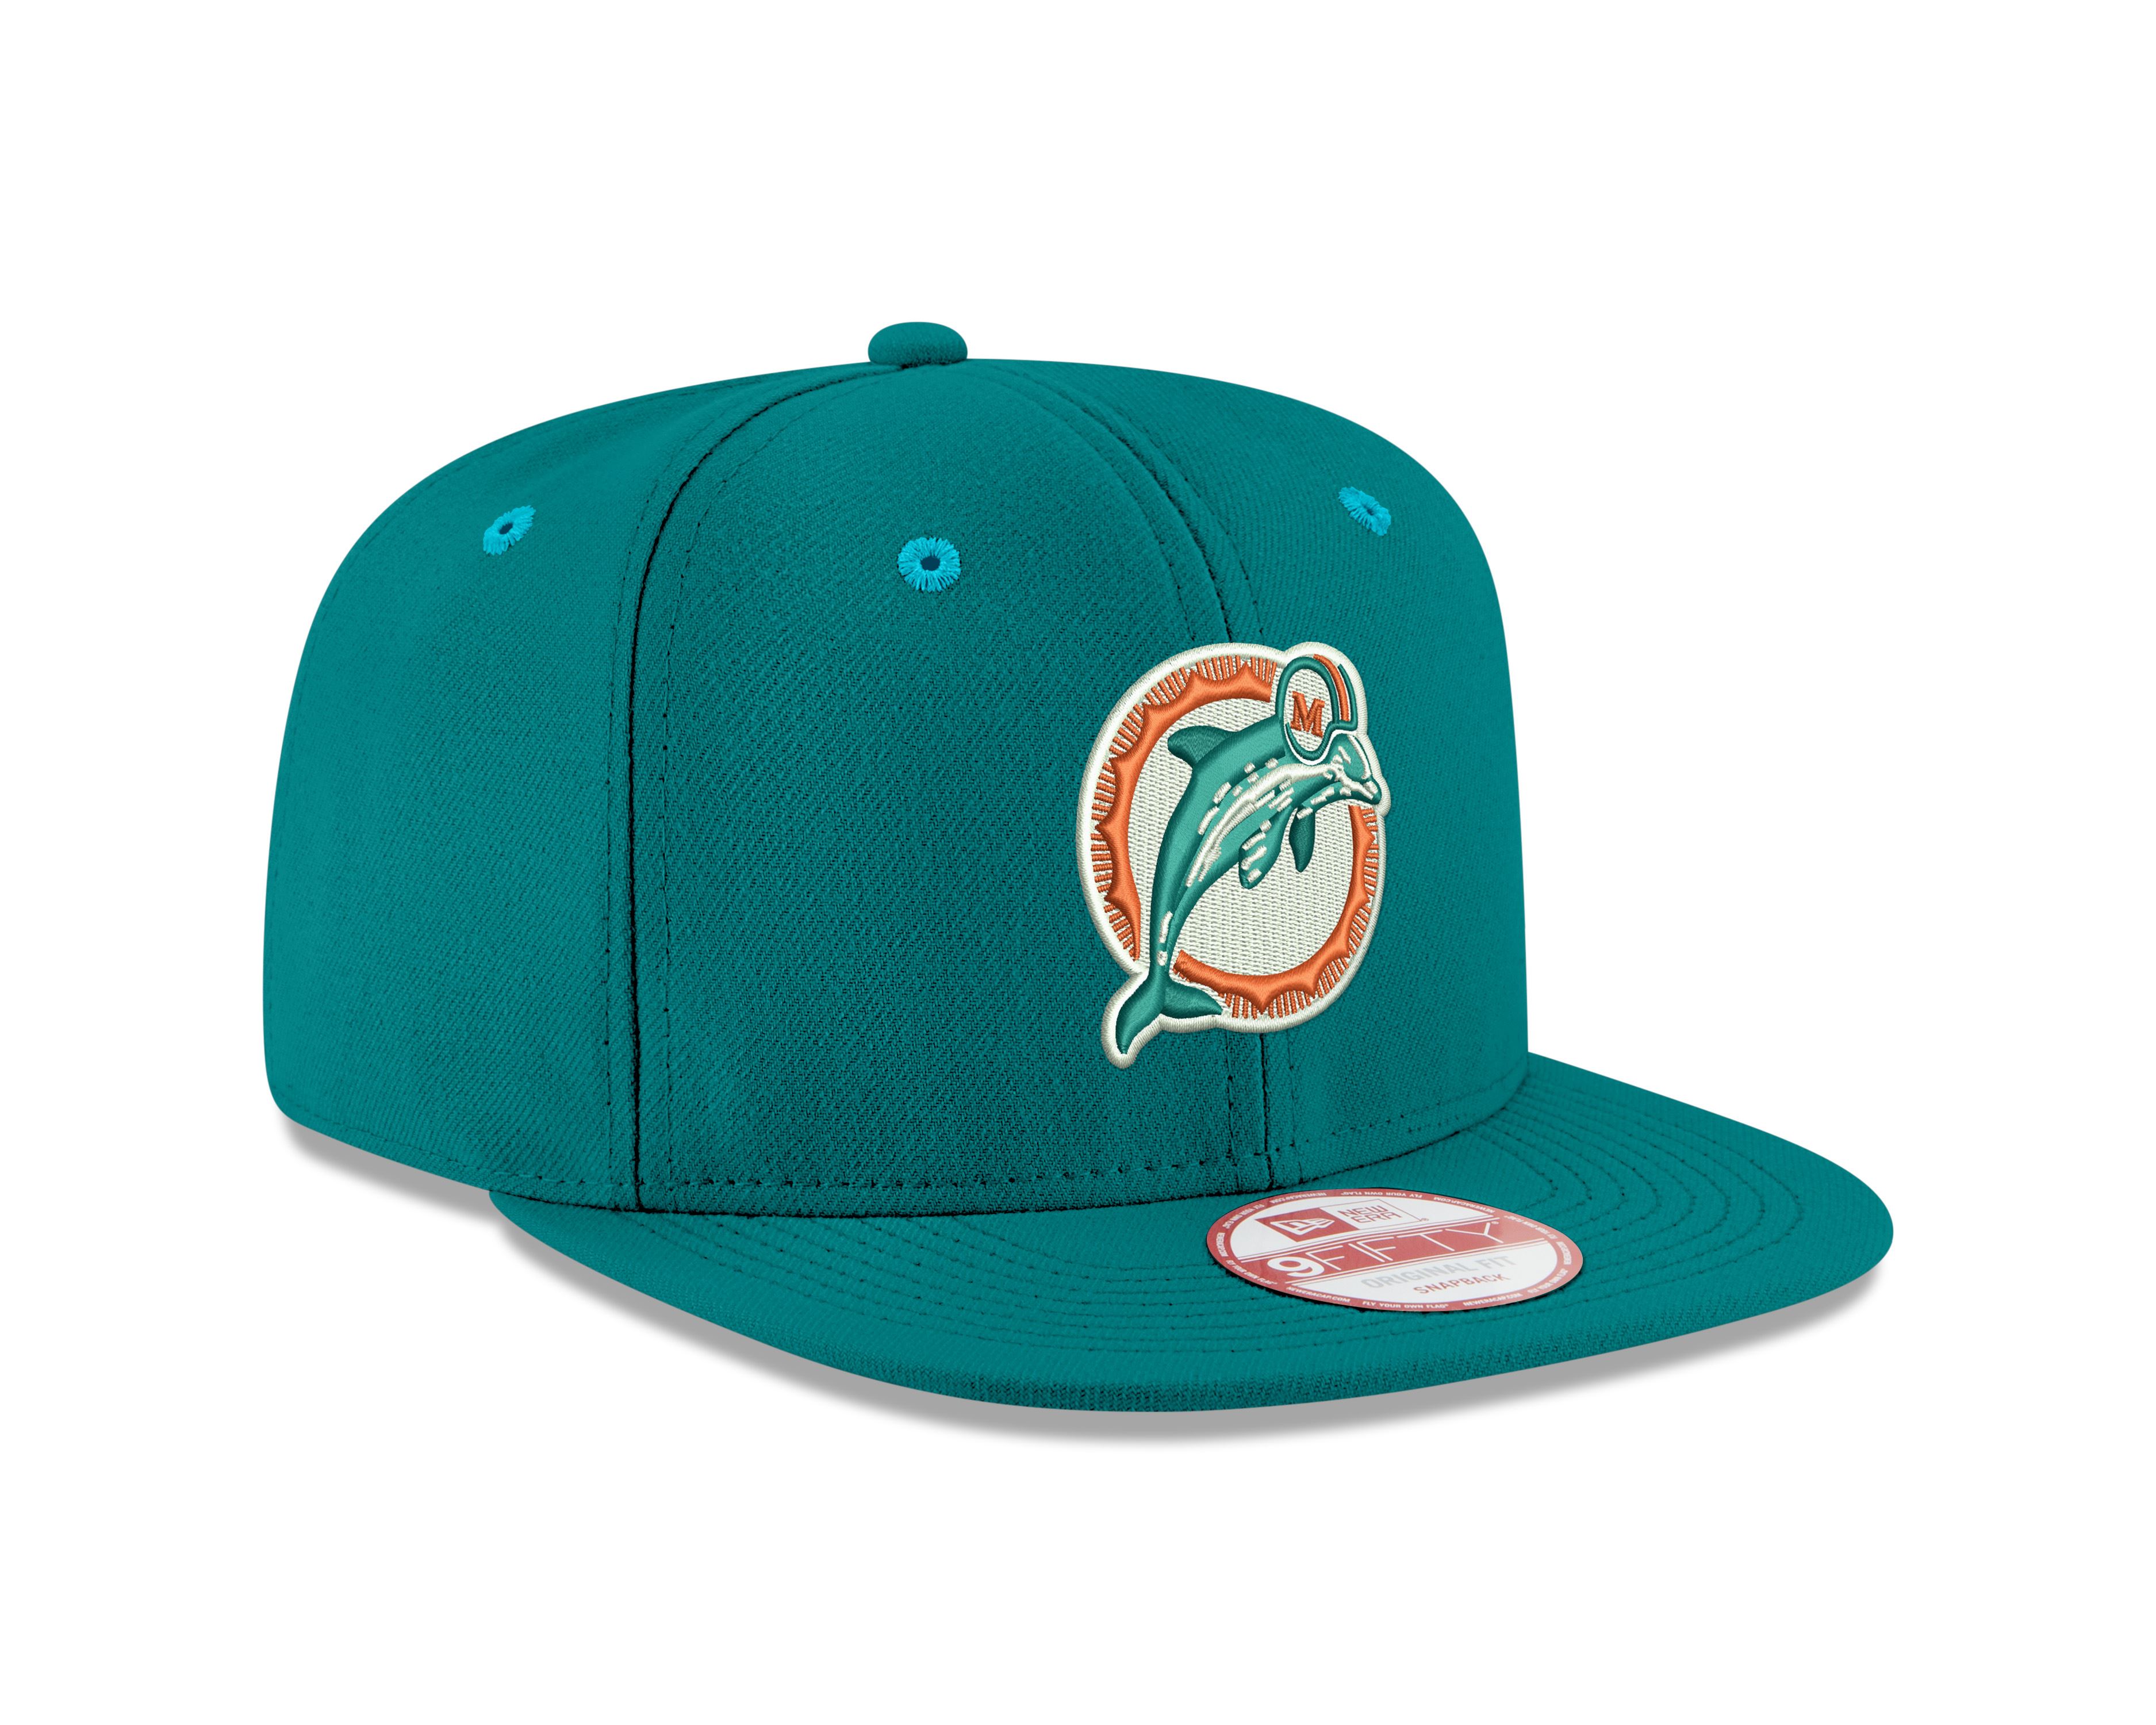 Miami Dolphins NFL Teal Blue 9Fifty Original Fit Snapback Cap New Era